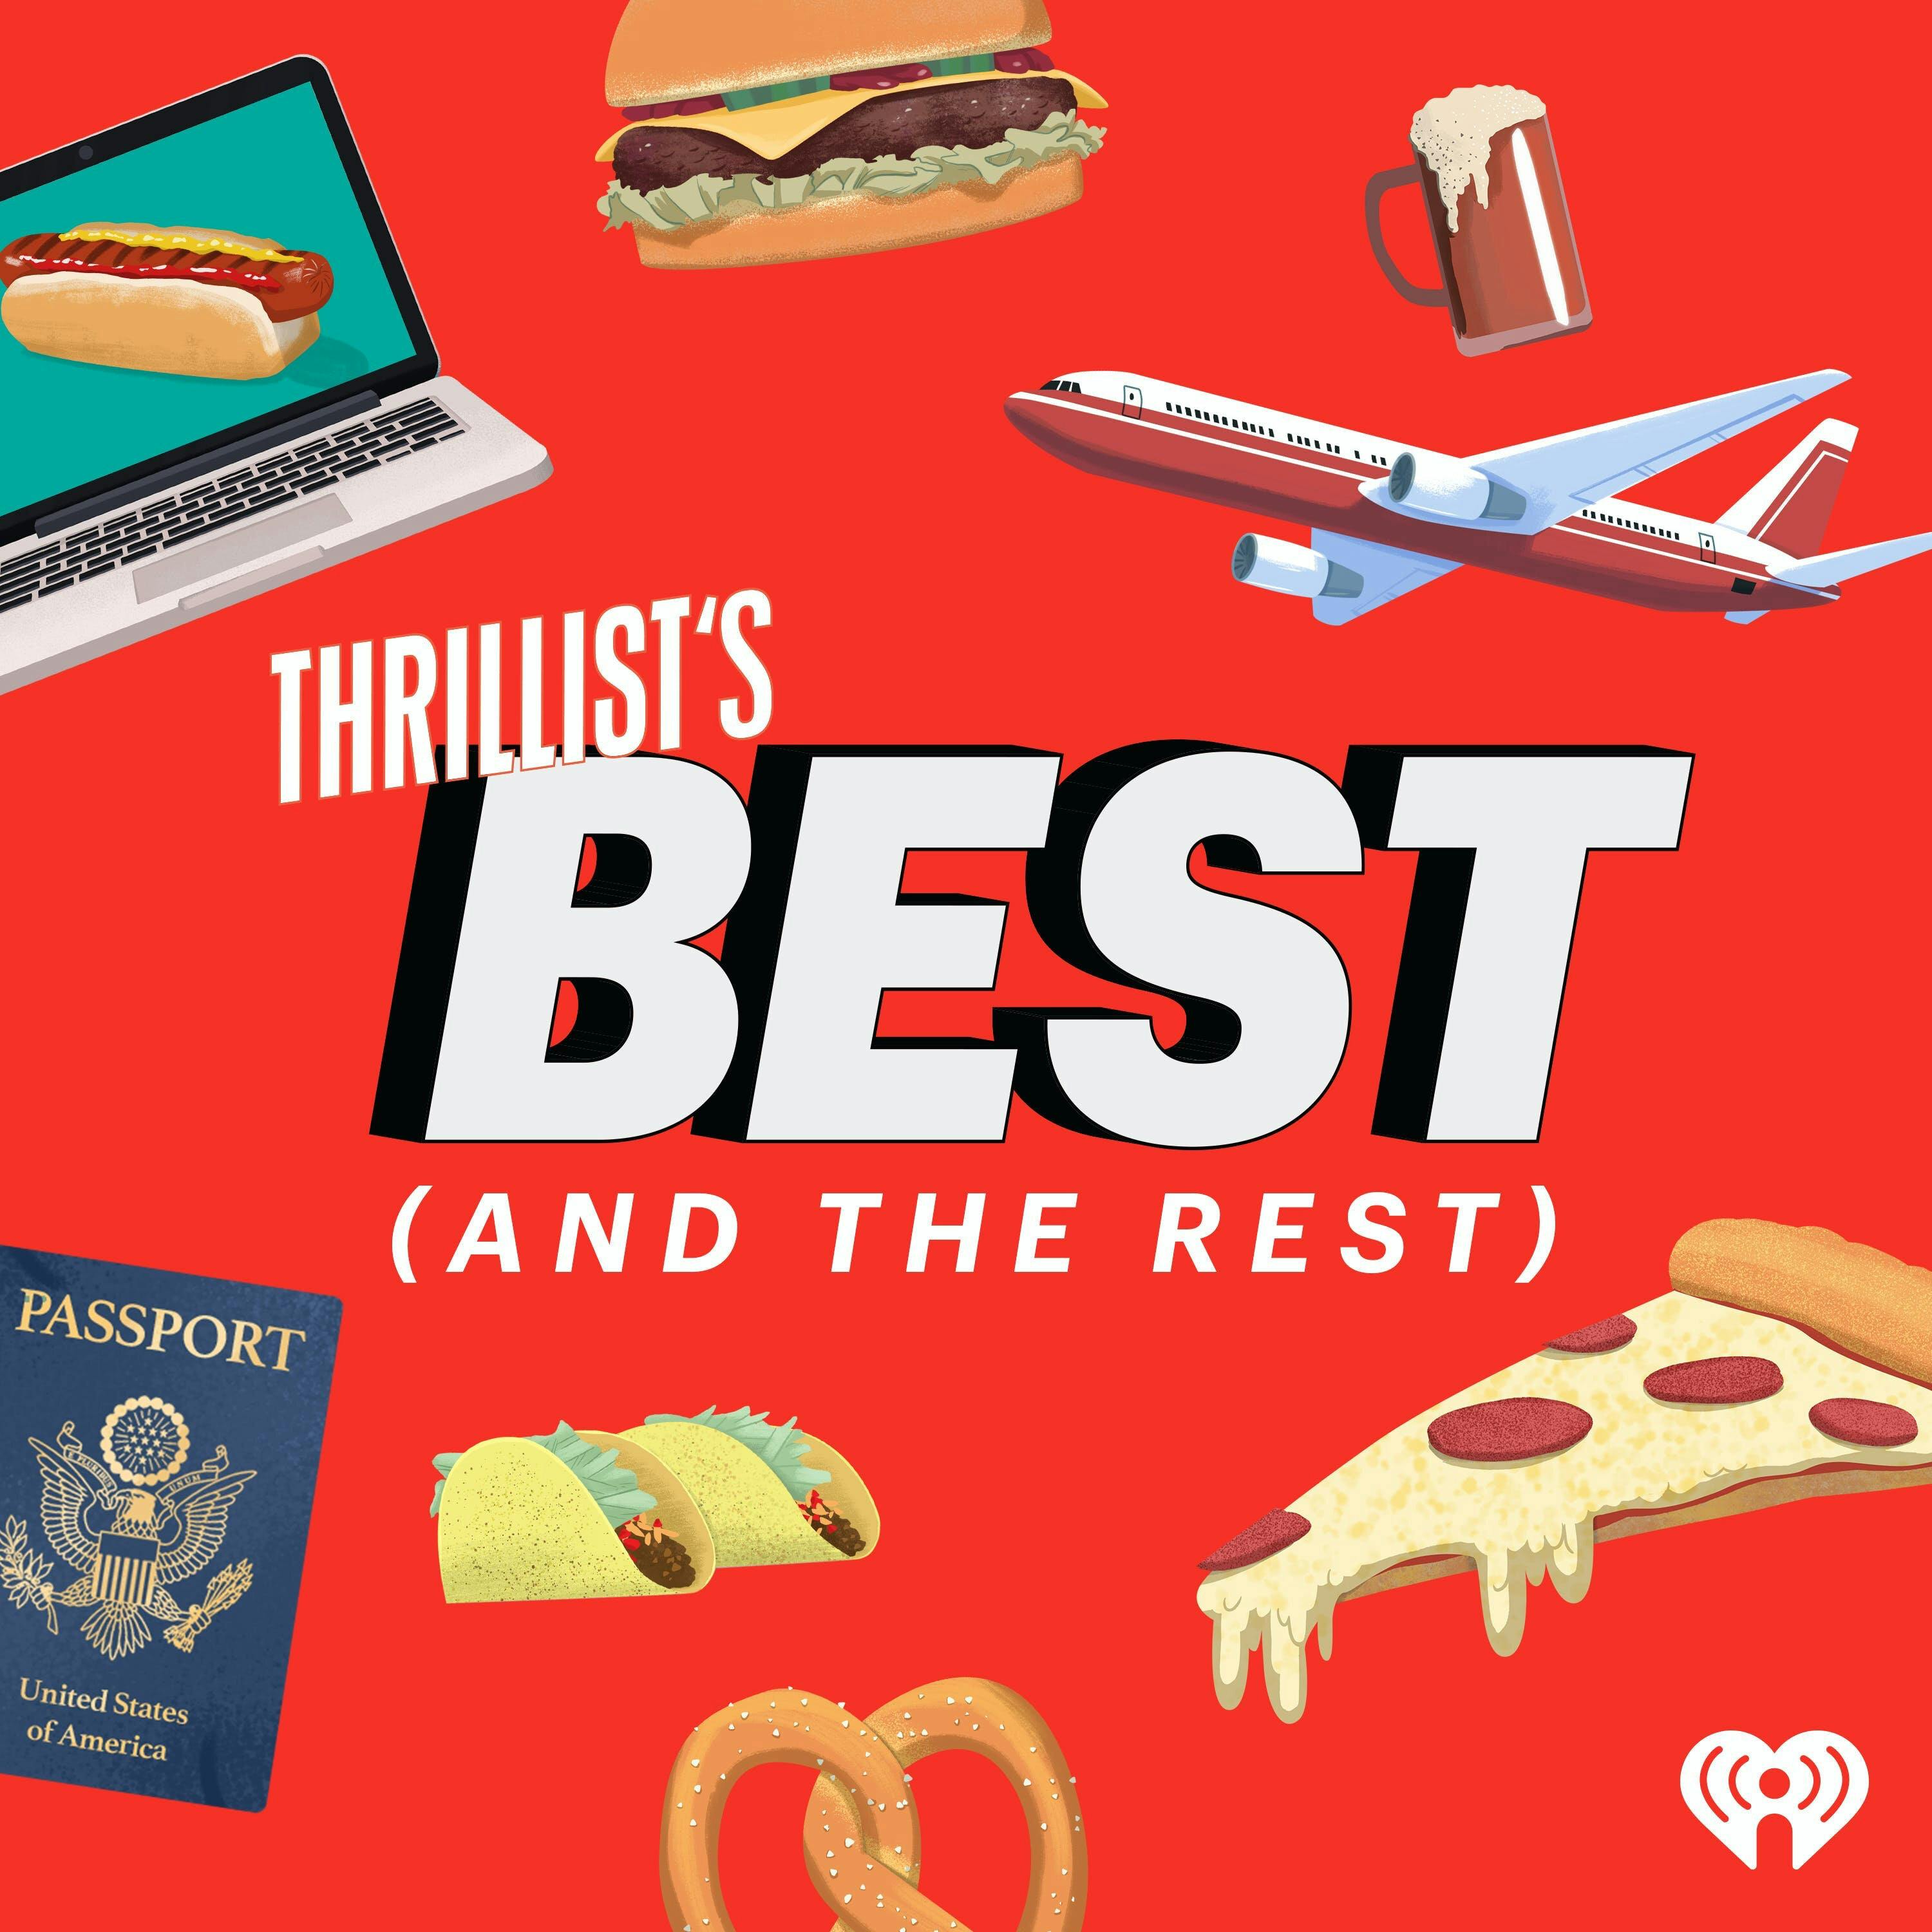 THRILLIST'S BEST: The Best Hidden Gems on Netflix